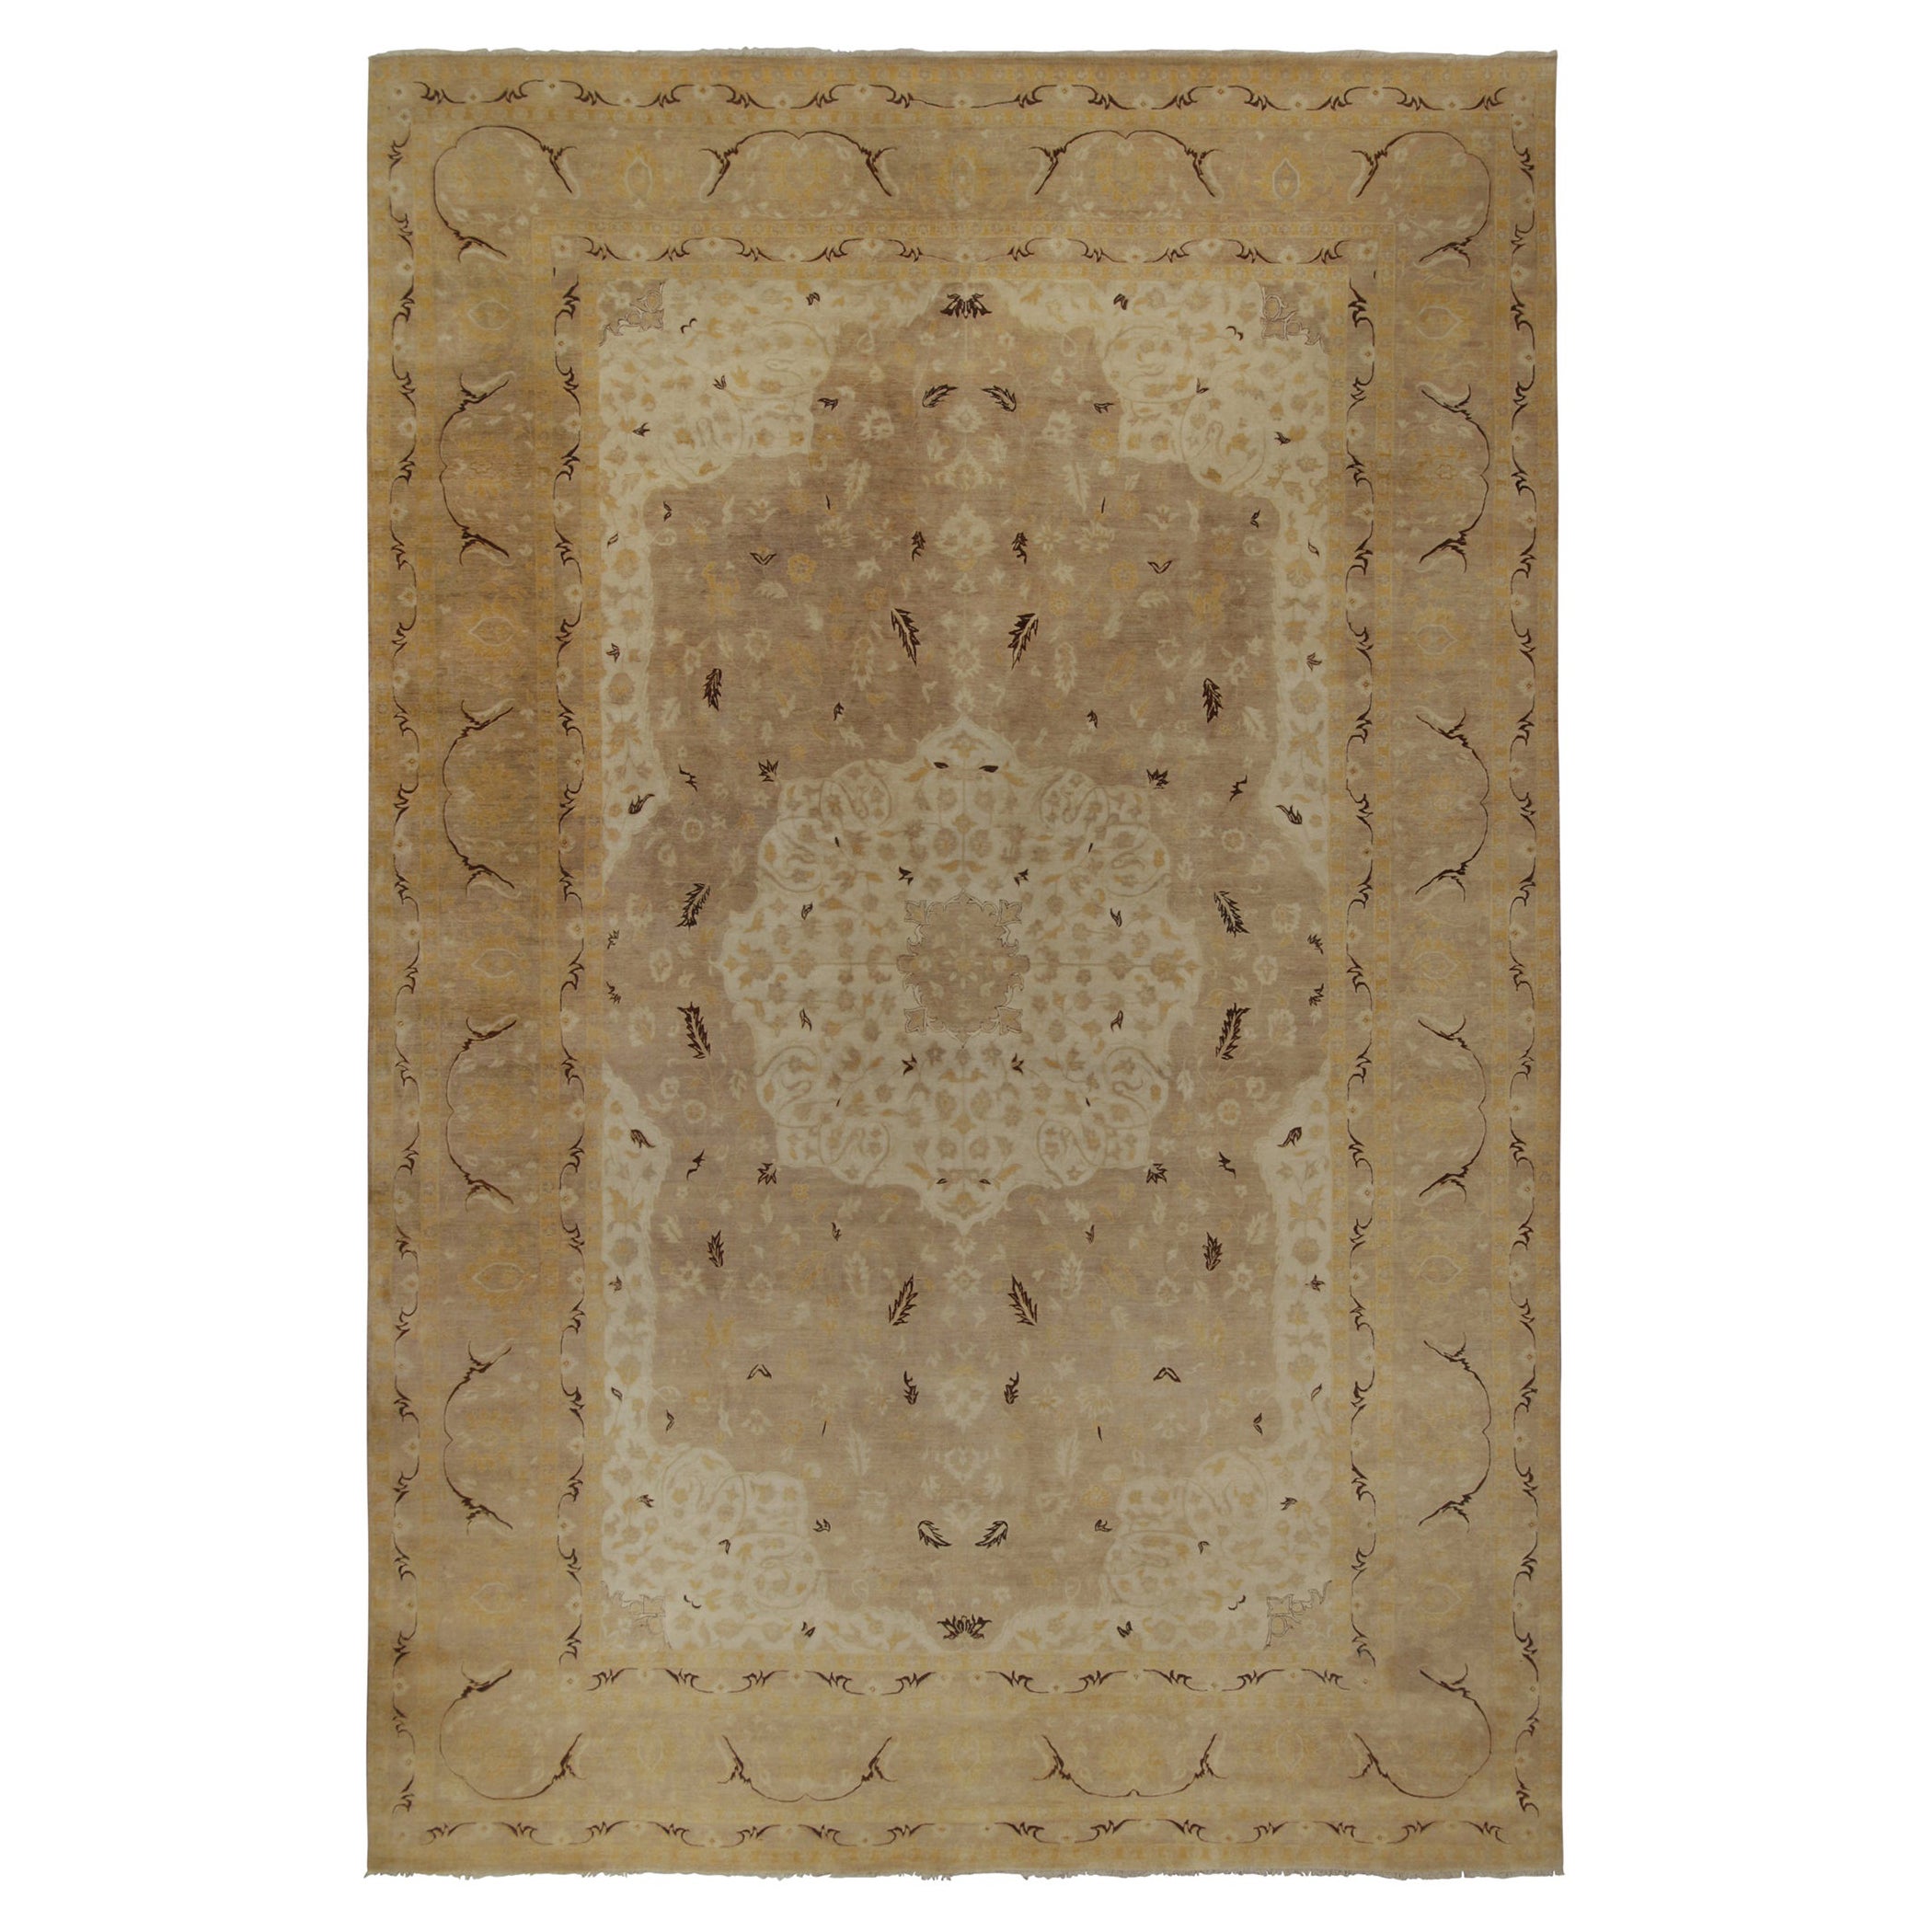 Rug & Kilim's Classic Tabriz-Stil Teppich in Beige-Braun und Gold Floral Patterns 